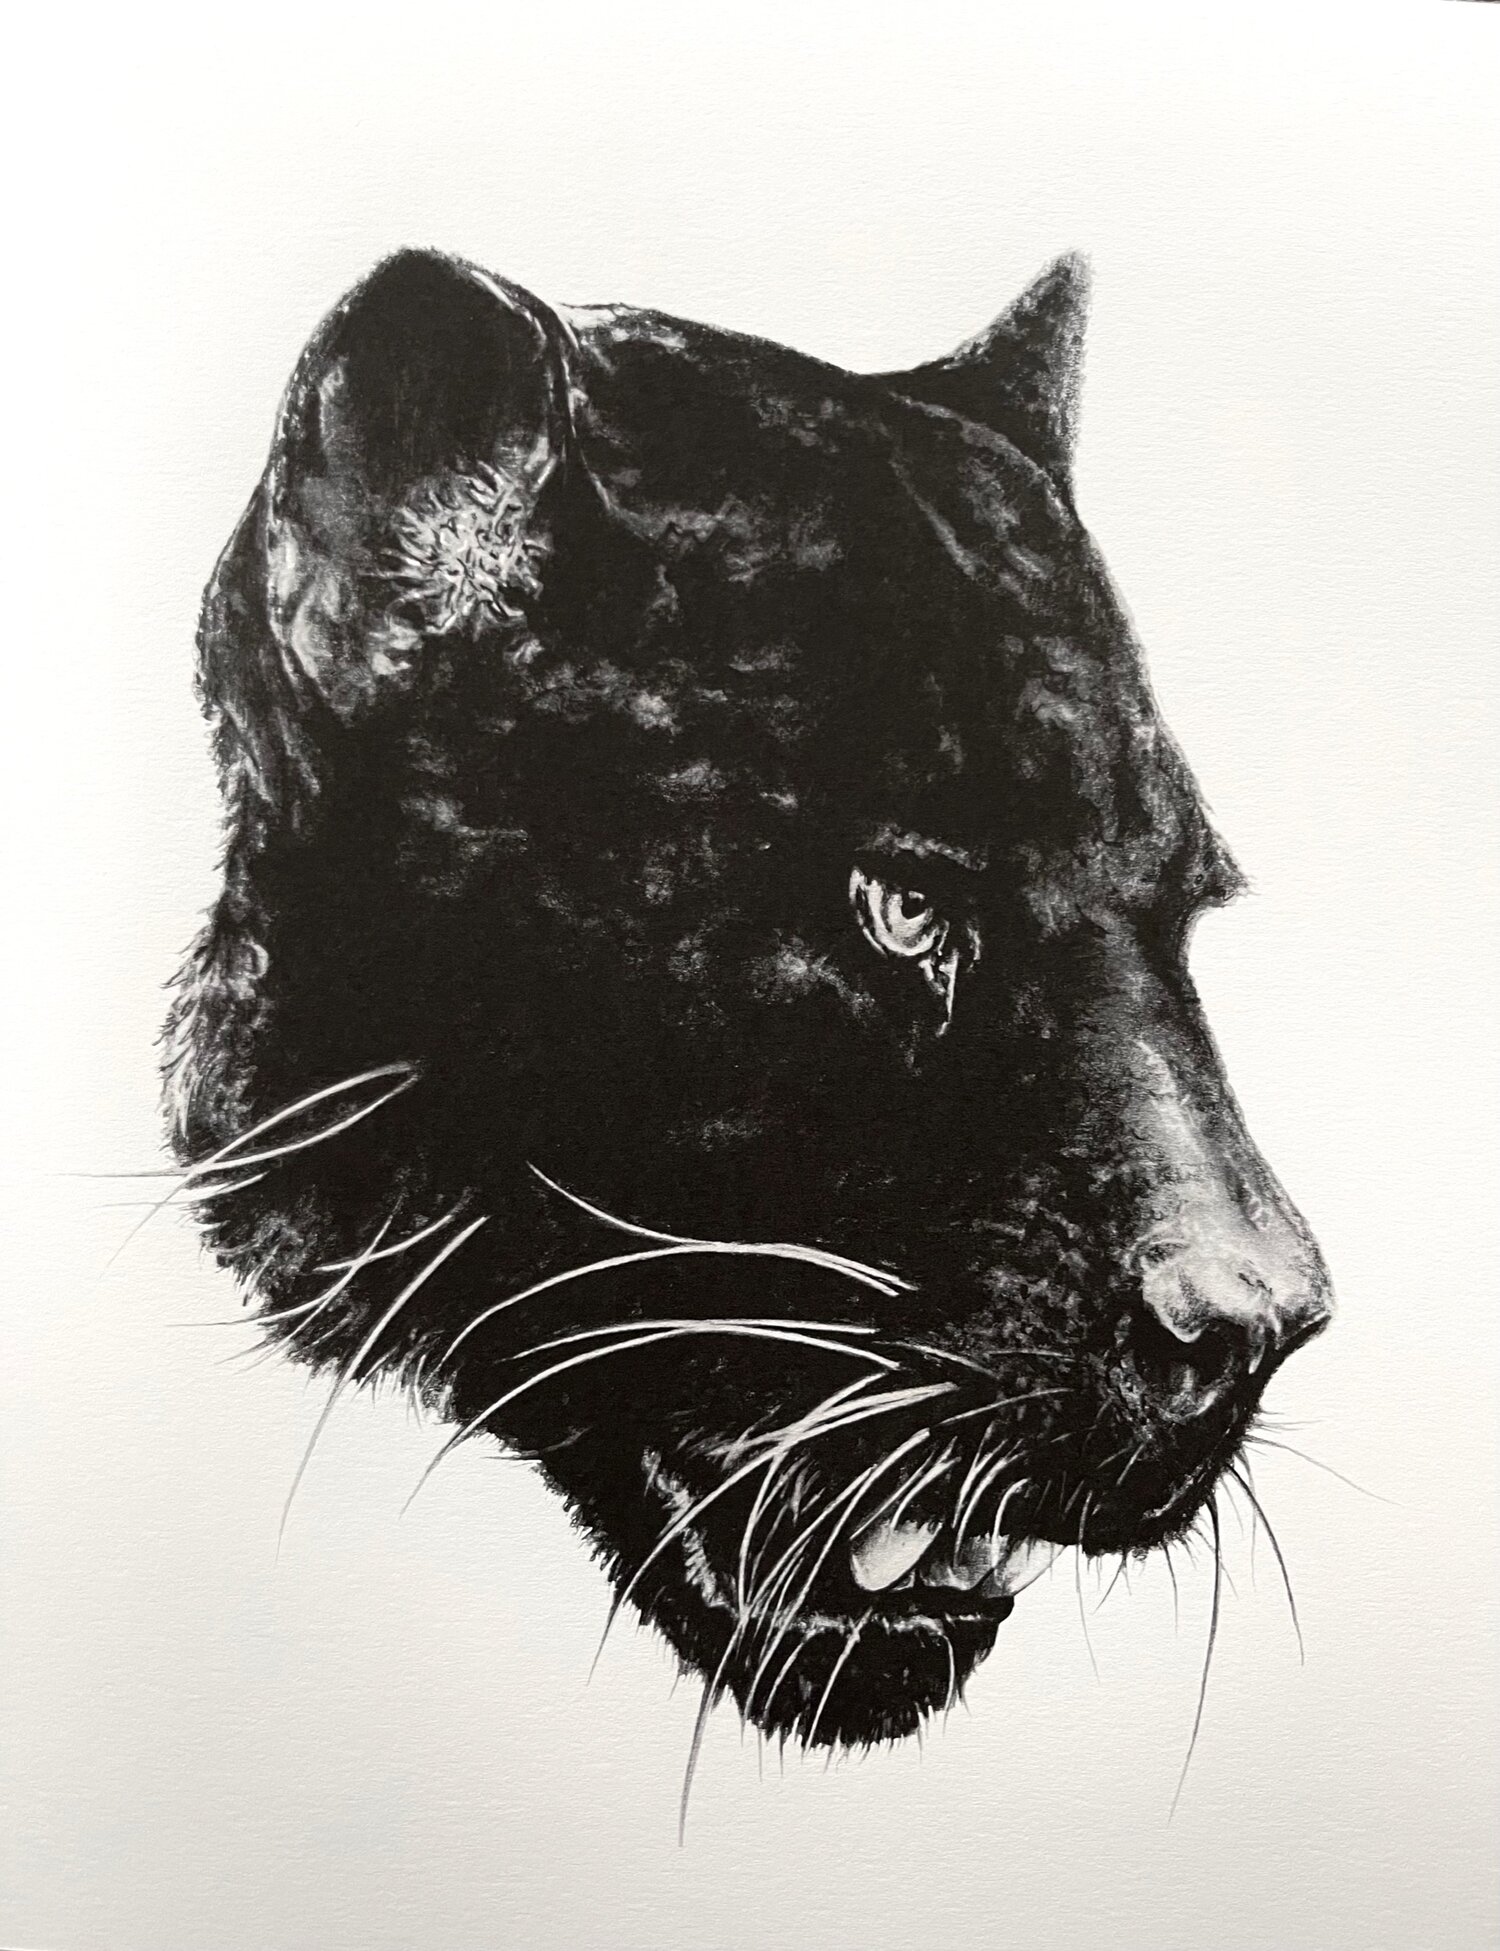 Panther Printing